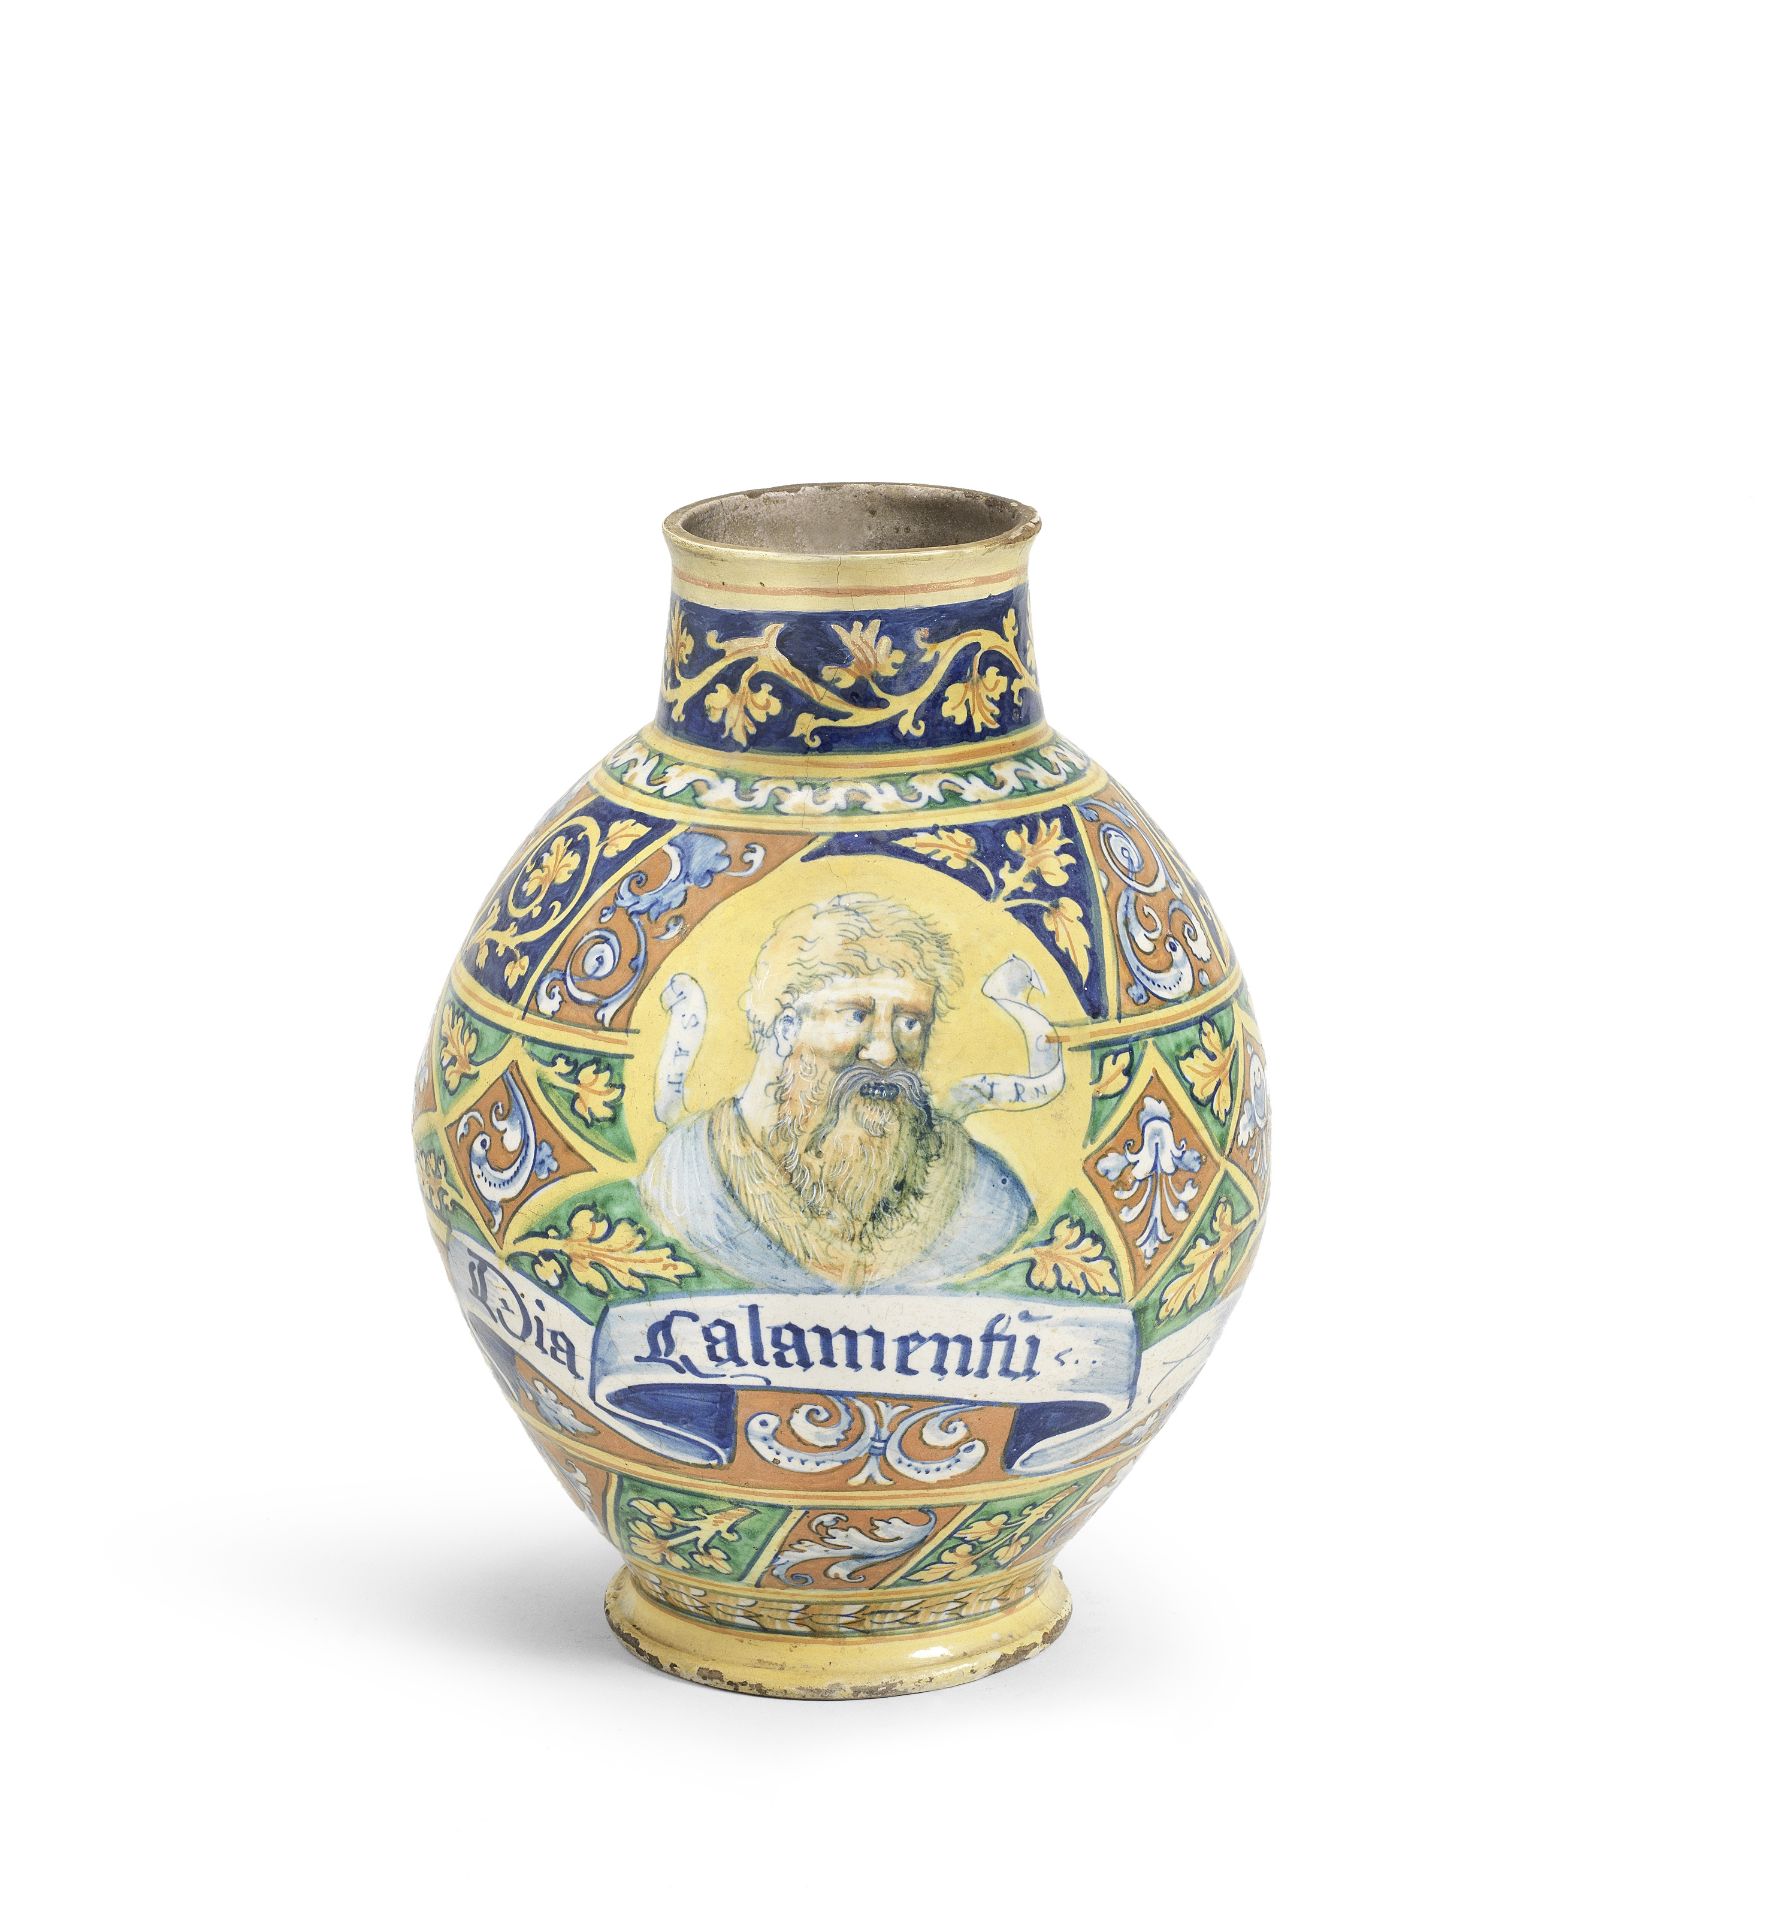 A Faenza maiolica apothecary jar, circa 1545-50